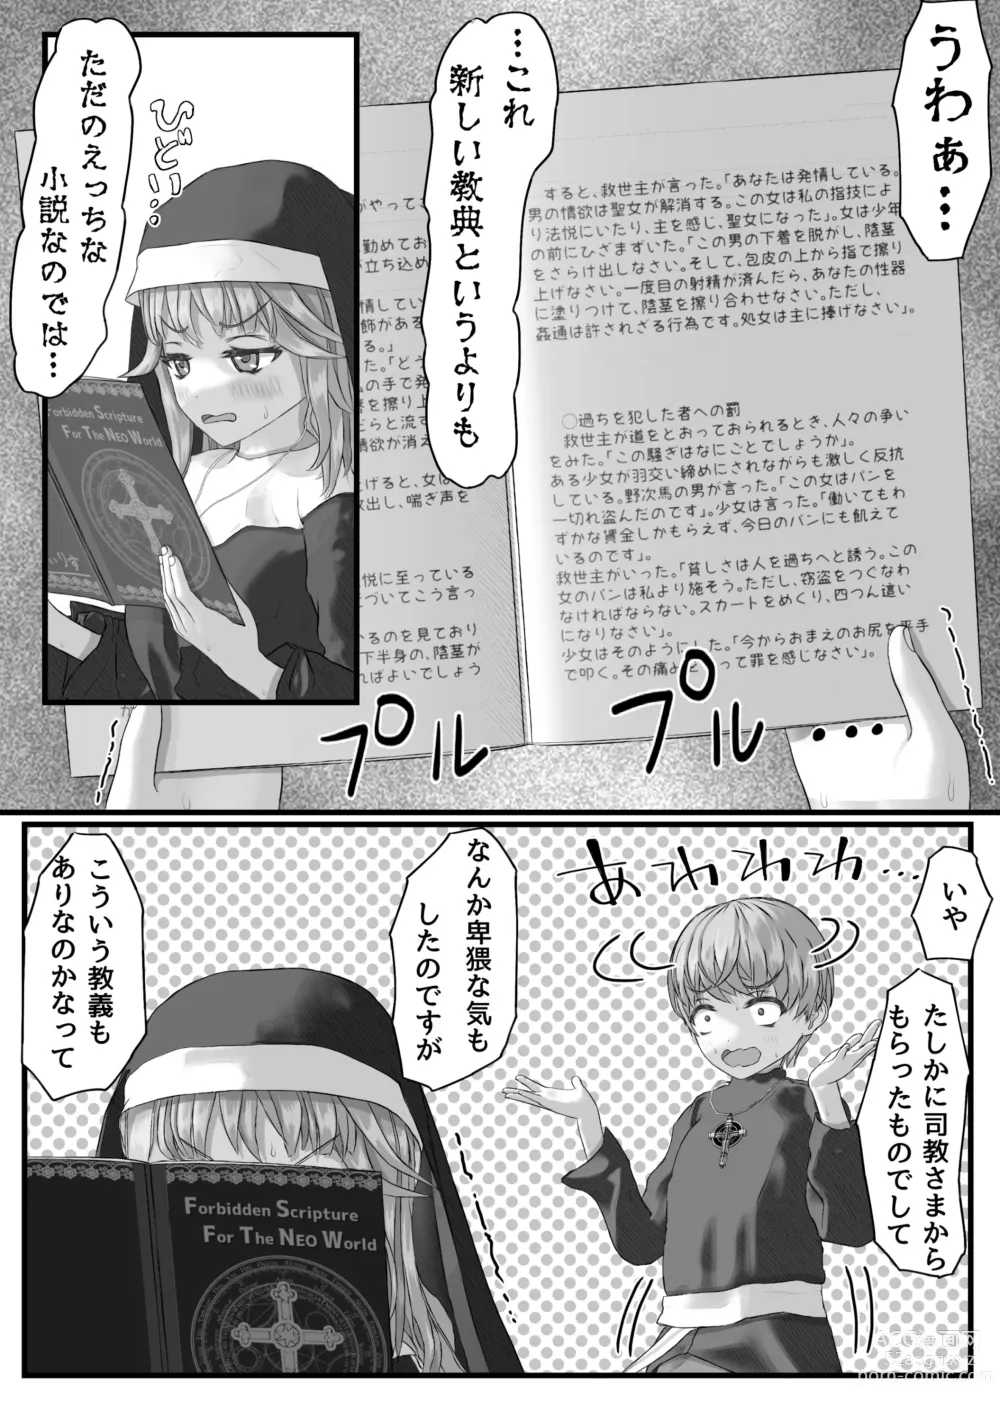 Page 21 of doujinshi Fu Honidesuga Osewa ni Natteiru Shisutā o Pantsu no ue kara ijirimasu